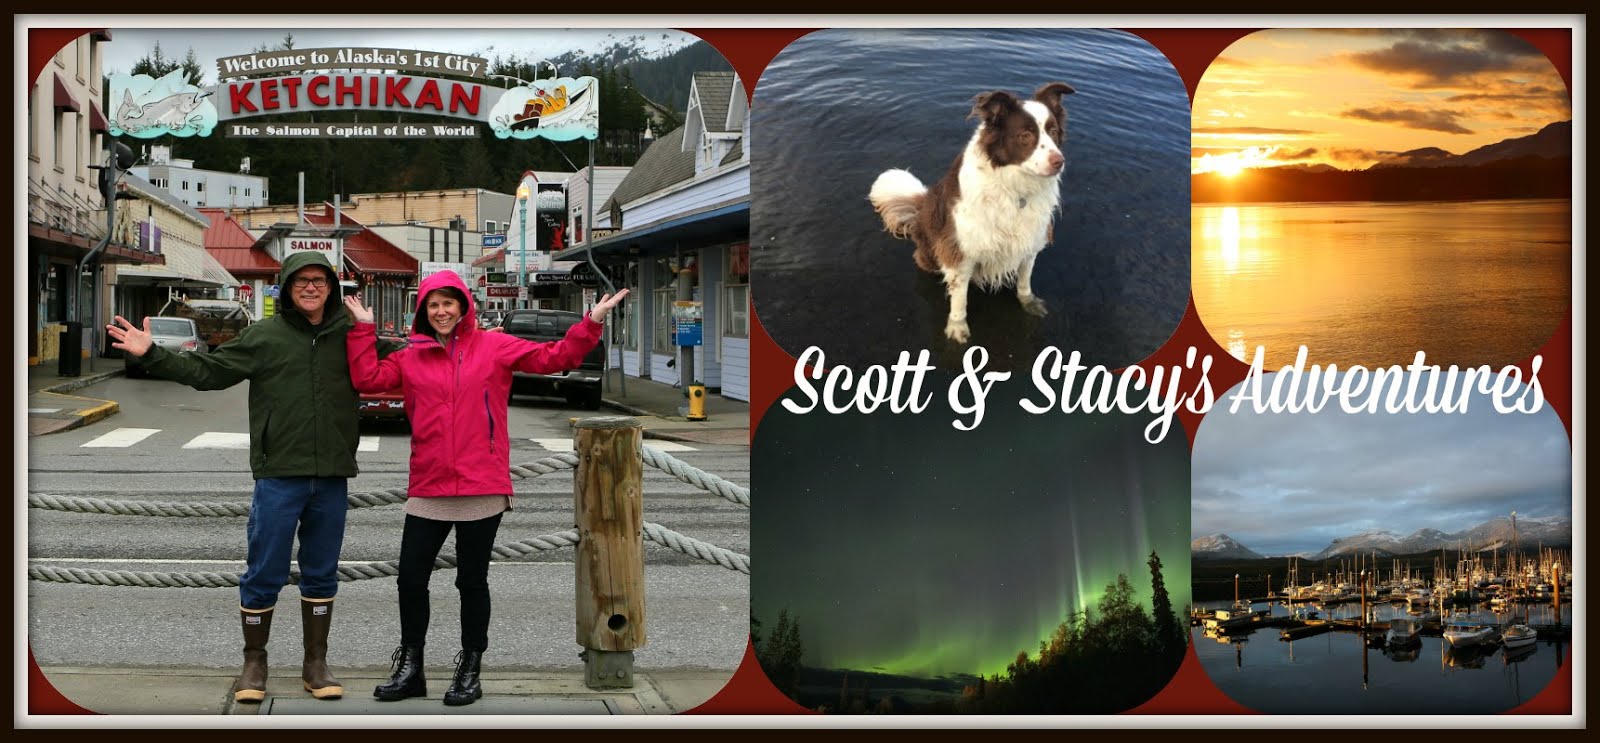 Scott & Stacy's Adventures